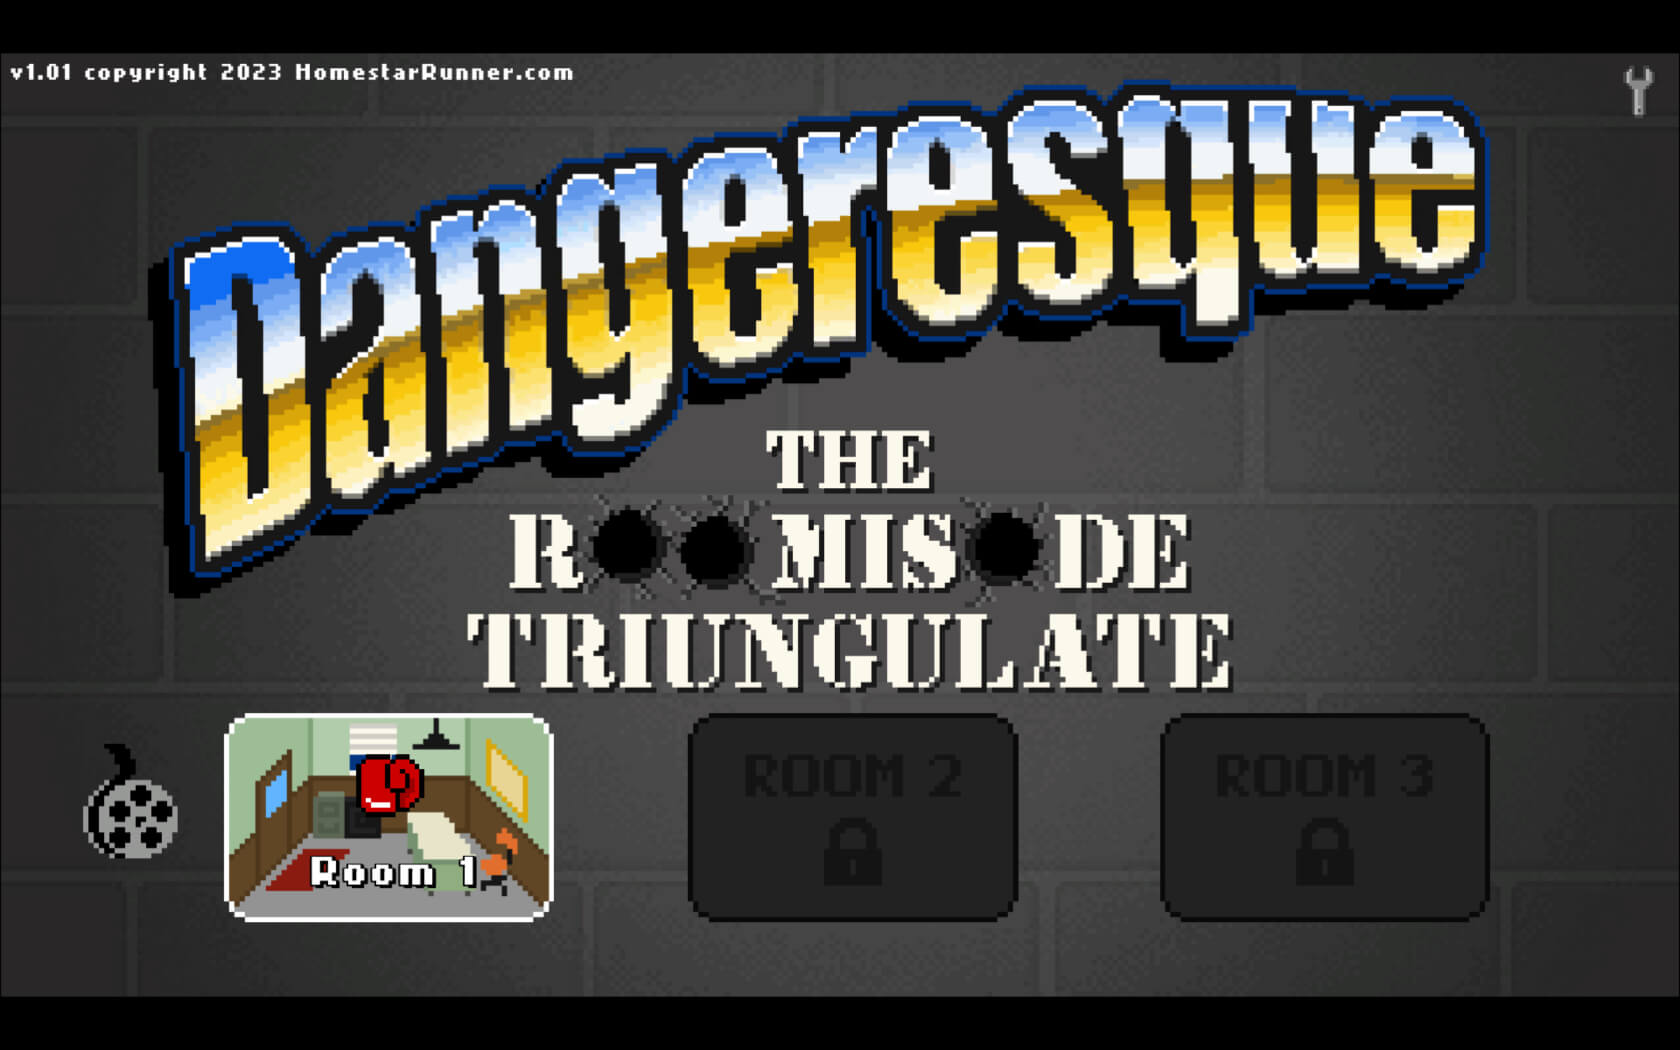 危险：三角房间剧集 Dangeresque: The Roomisode Triungulate for Mac v1.0.1.79705.0 英文原生版-1